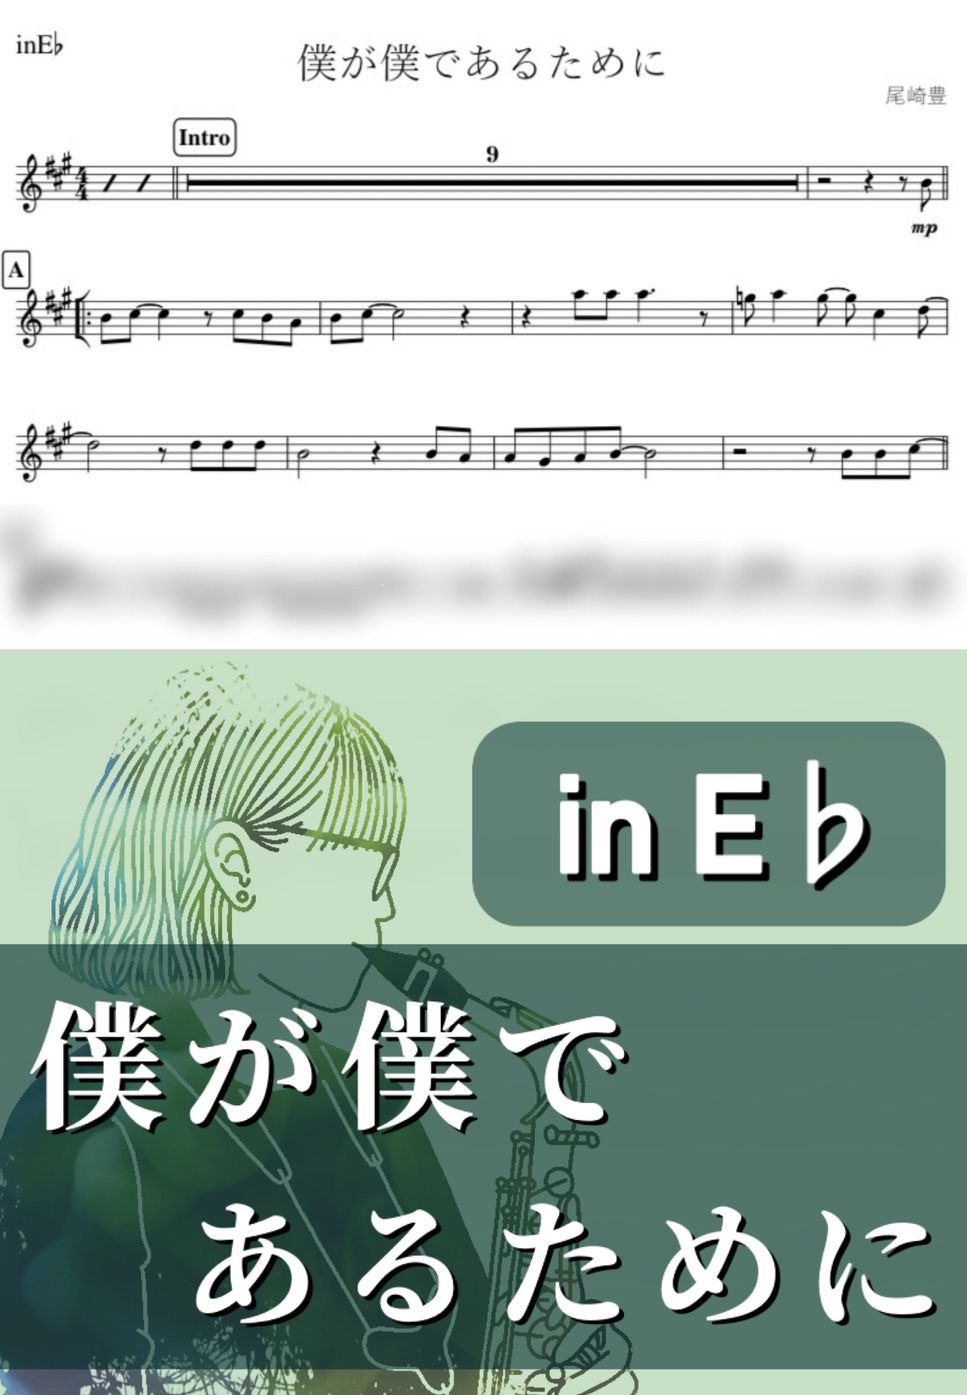 尾崎豊 - 僕が僕であるために (E♭) by kanamusic